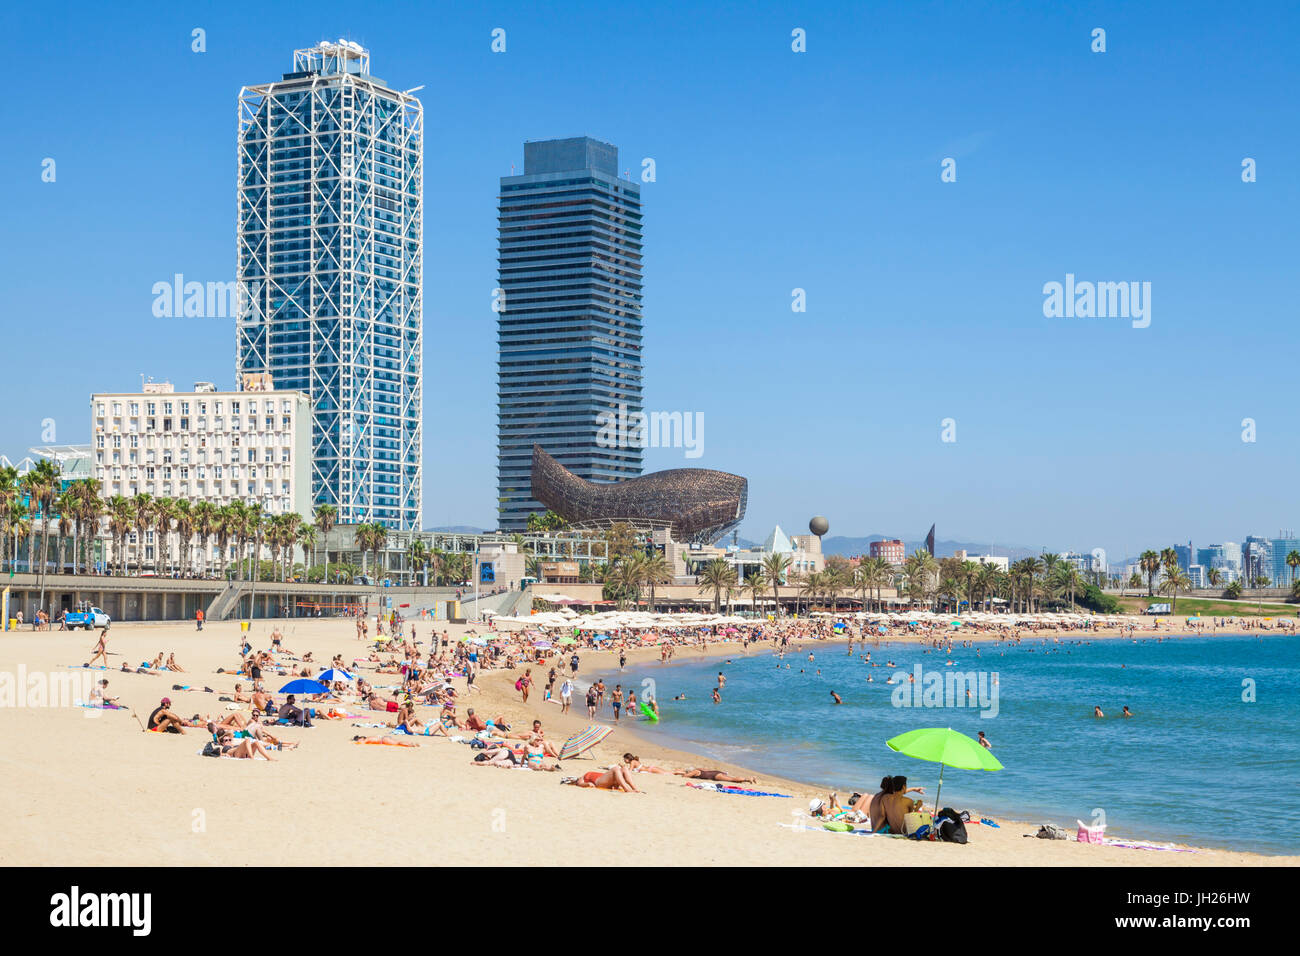 Las personas tomando el sol en la playa de Barcelona, la Barceloneta, Barcelona, Cataluña (Catalunya), España, Europa Foto de stock